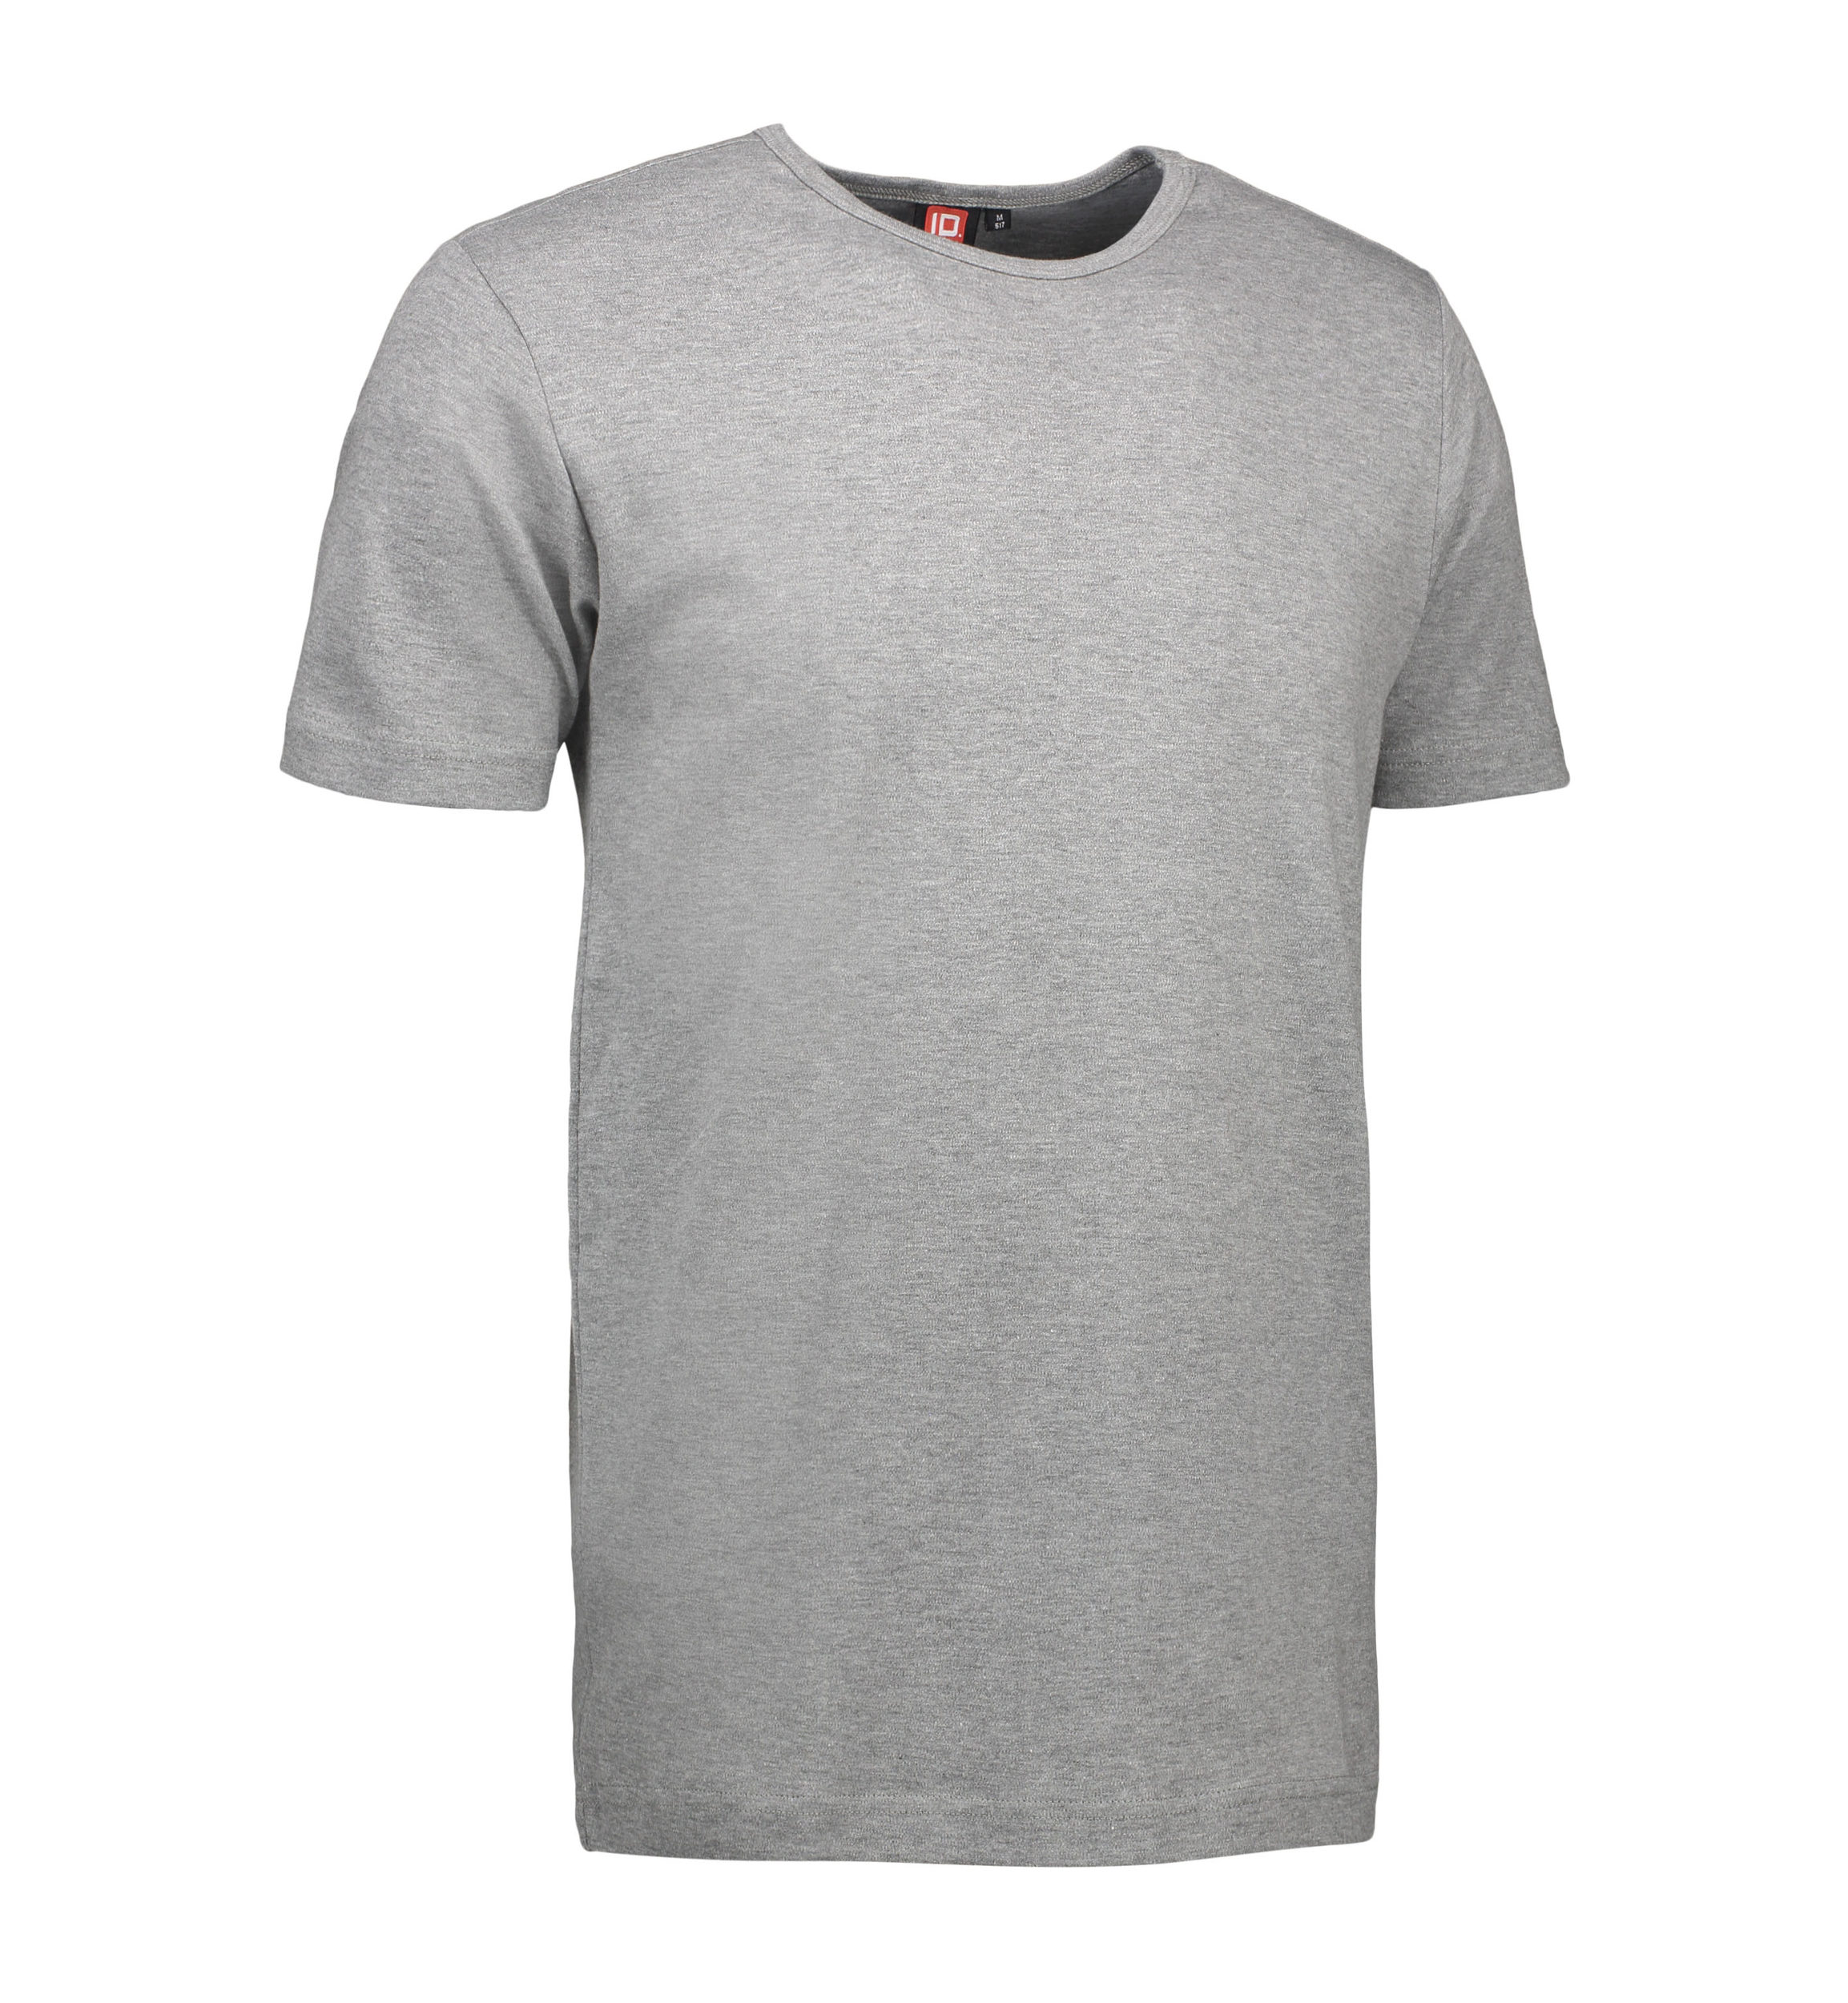 Billede af Grå t-shirt med rund hals til mænd - XL hos Sygeplejebutikken.dk